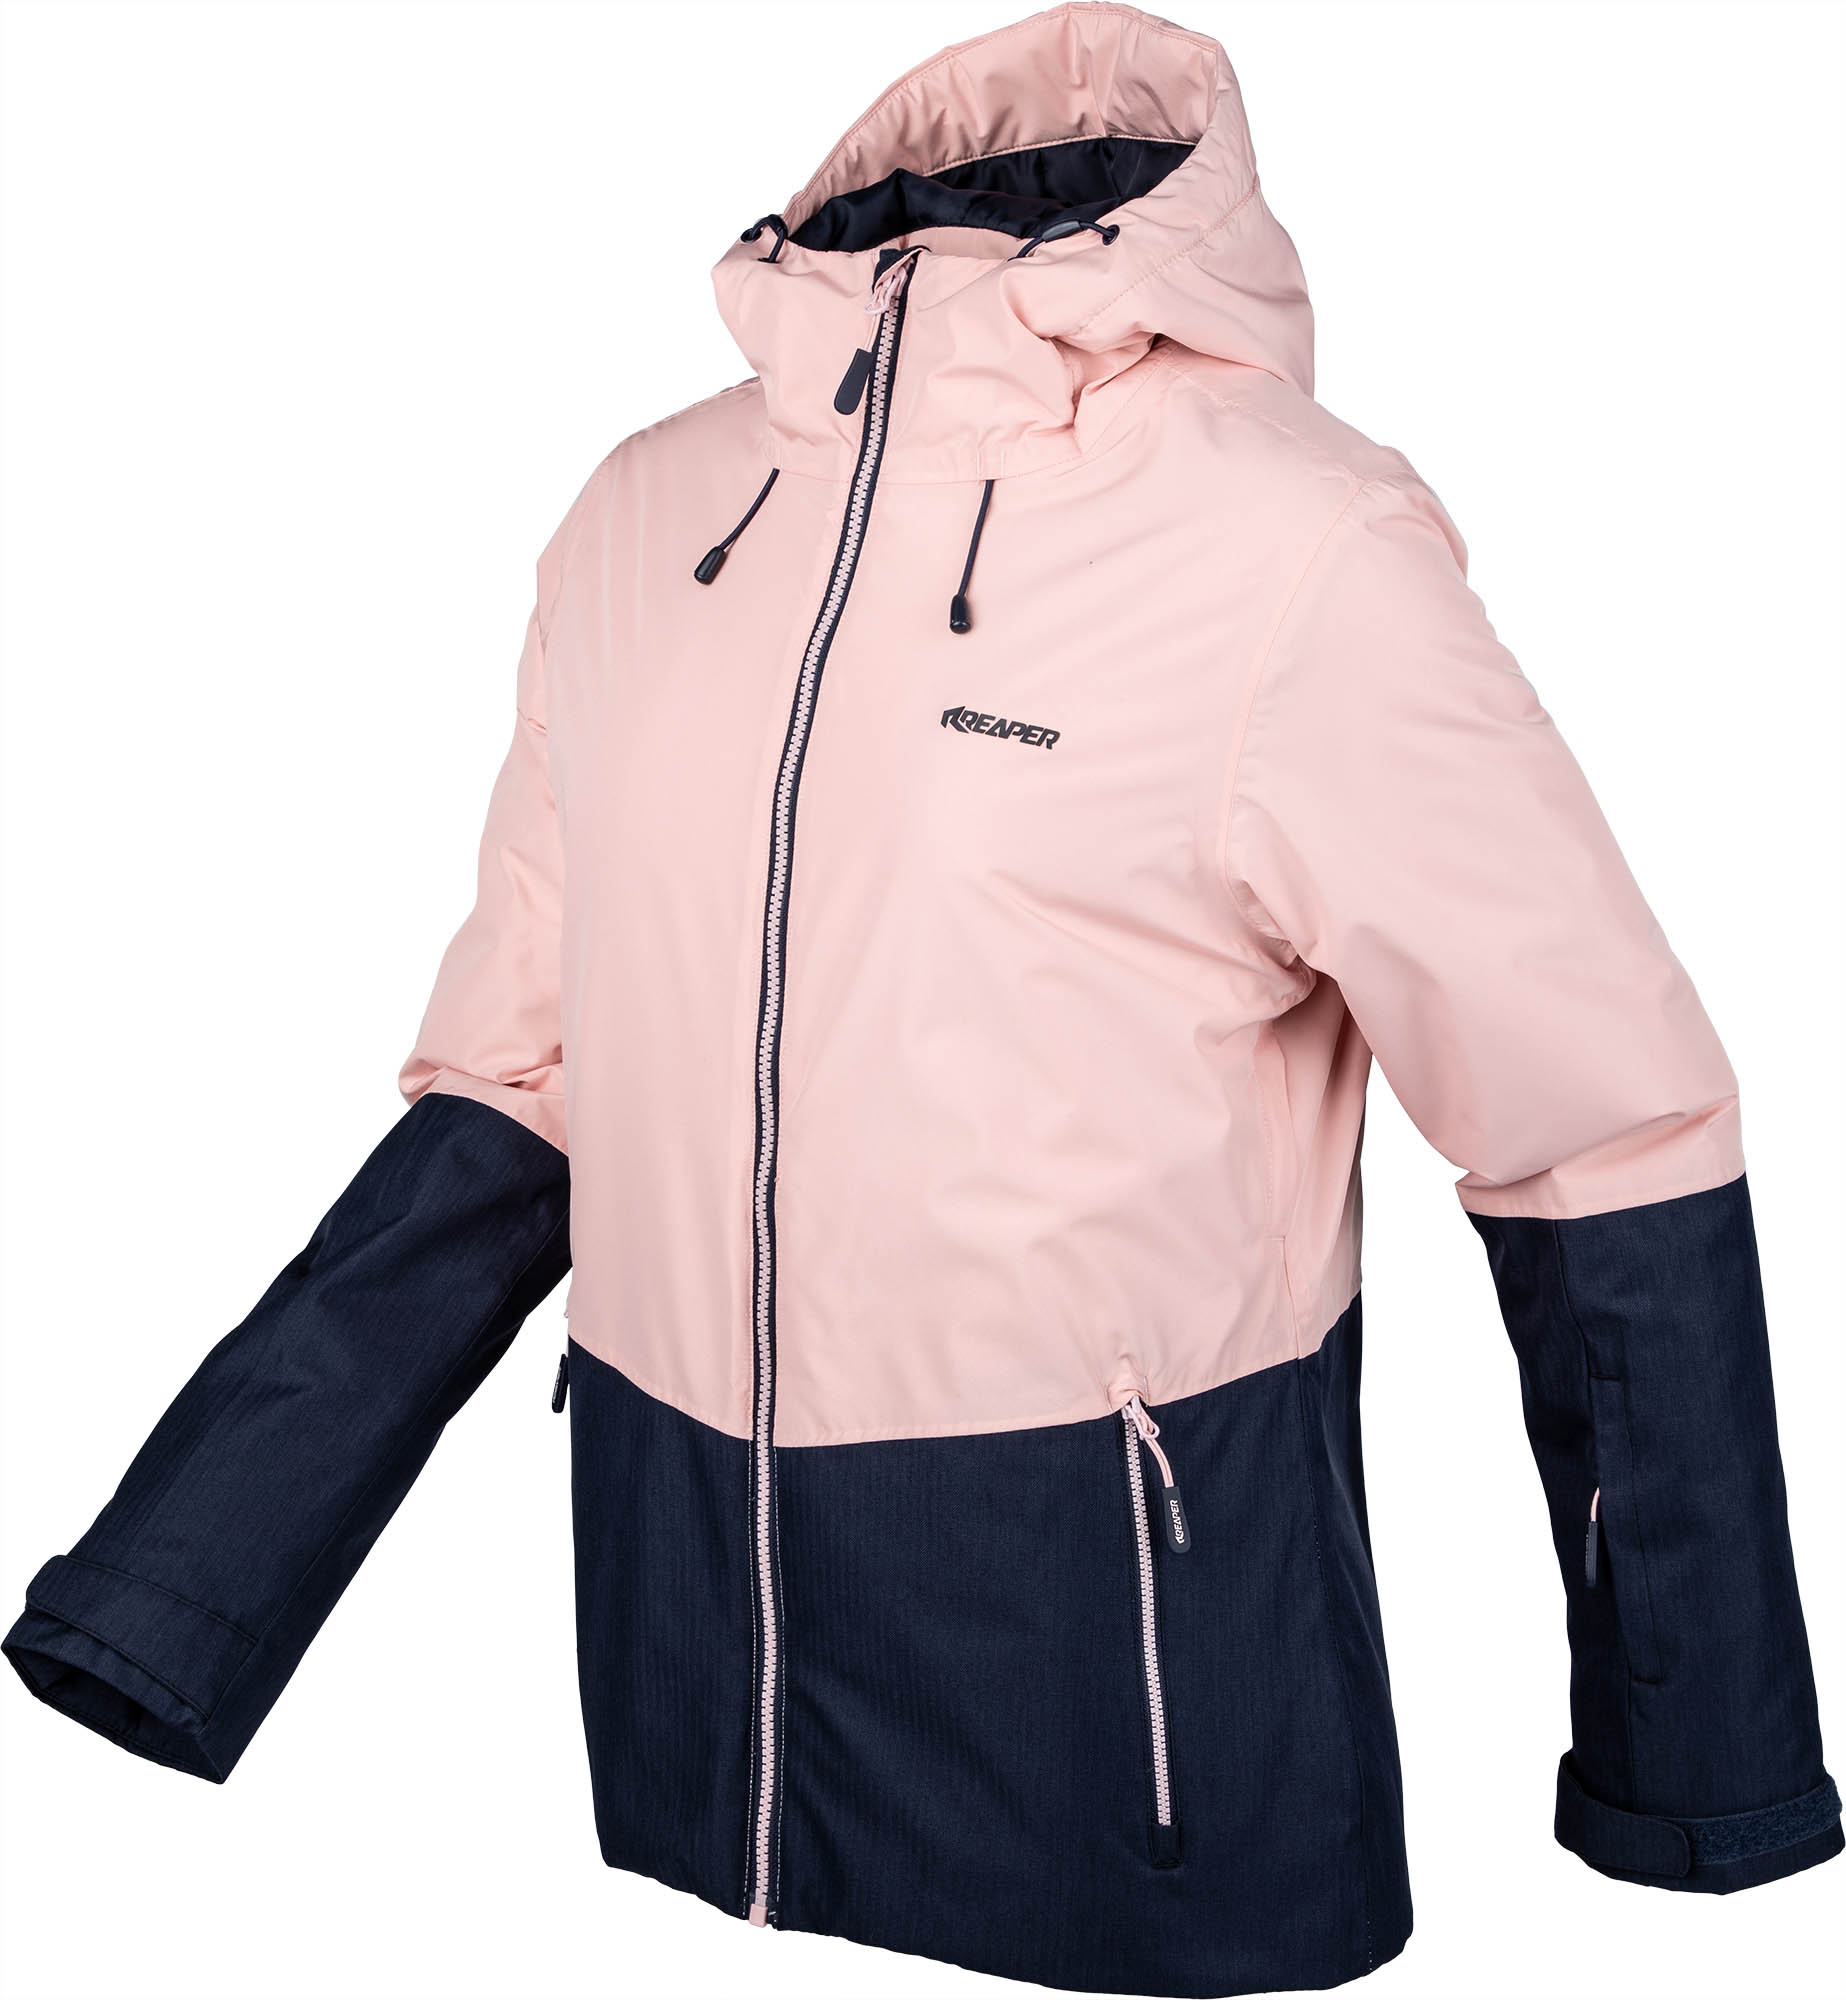 Women’s skiing jacket